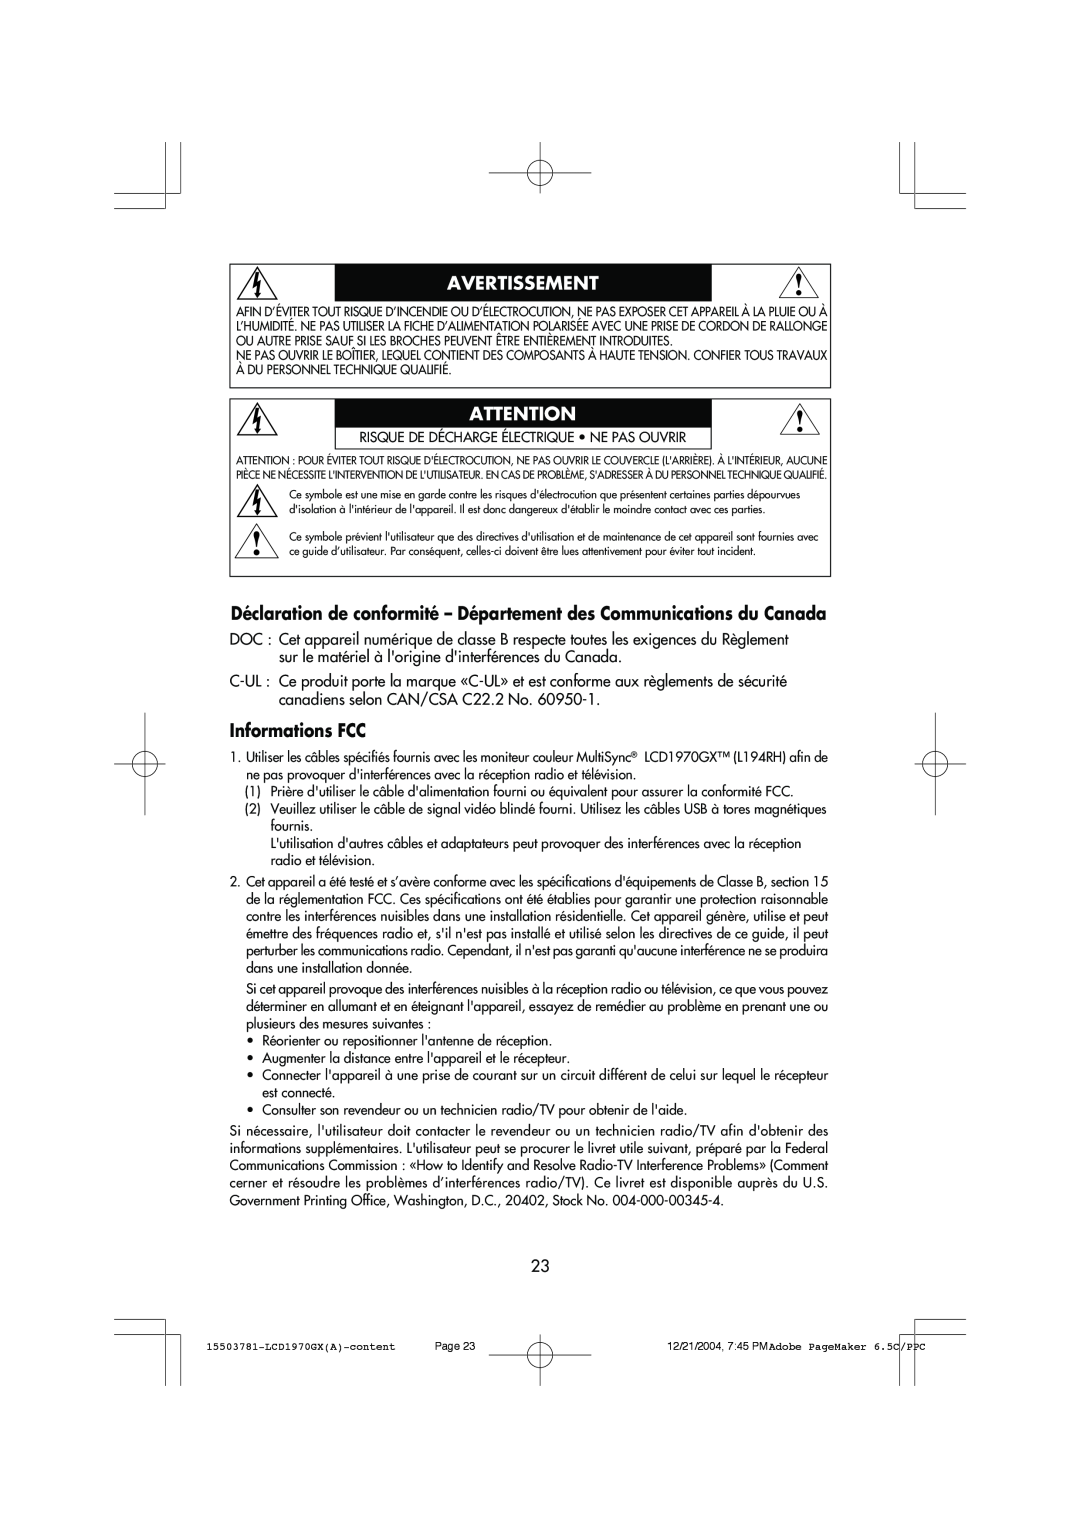 NEC LCD1970GX user manual Informations FCC, Avertissement 